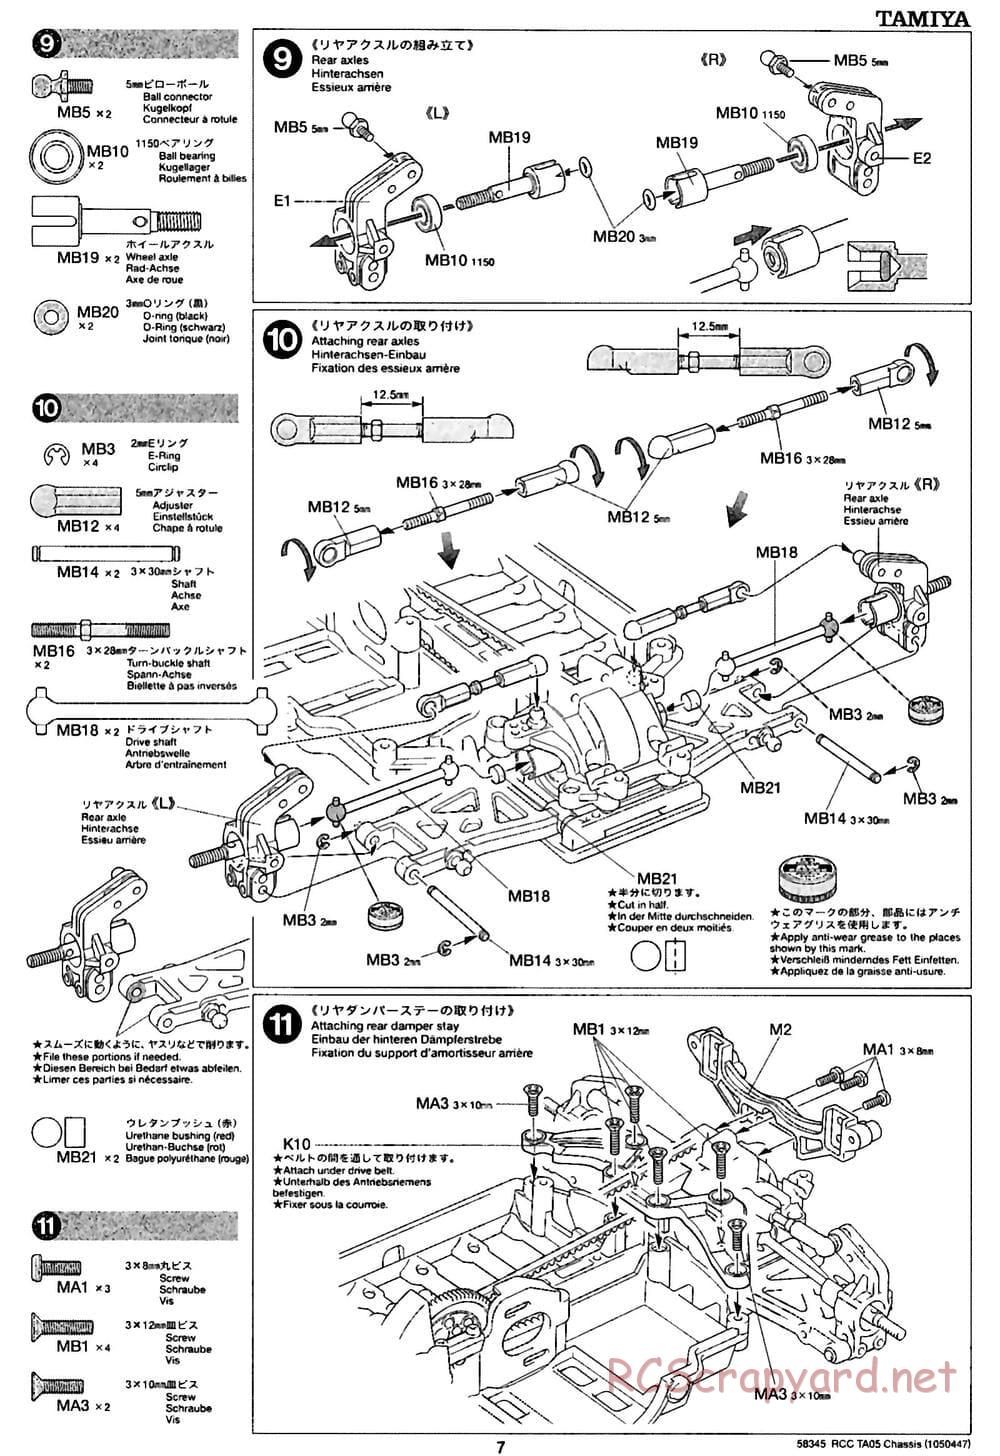 Tamiya - TA05 Chassis - Manual - Page 7